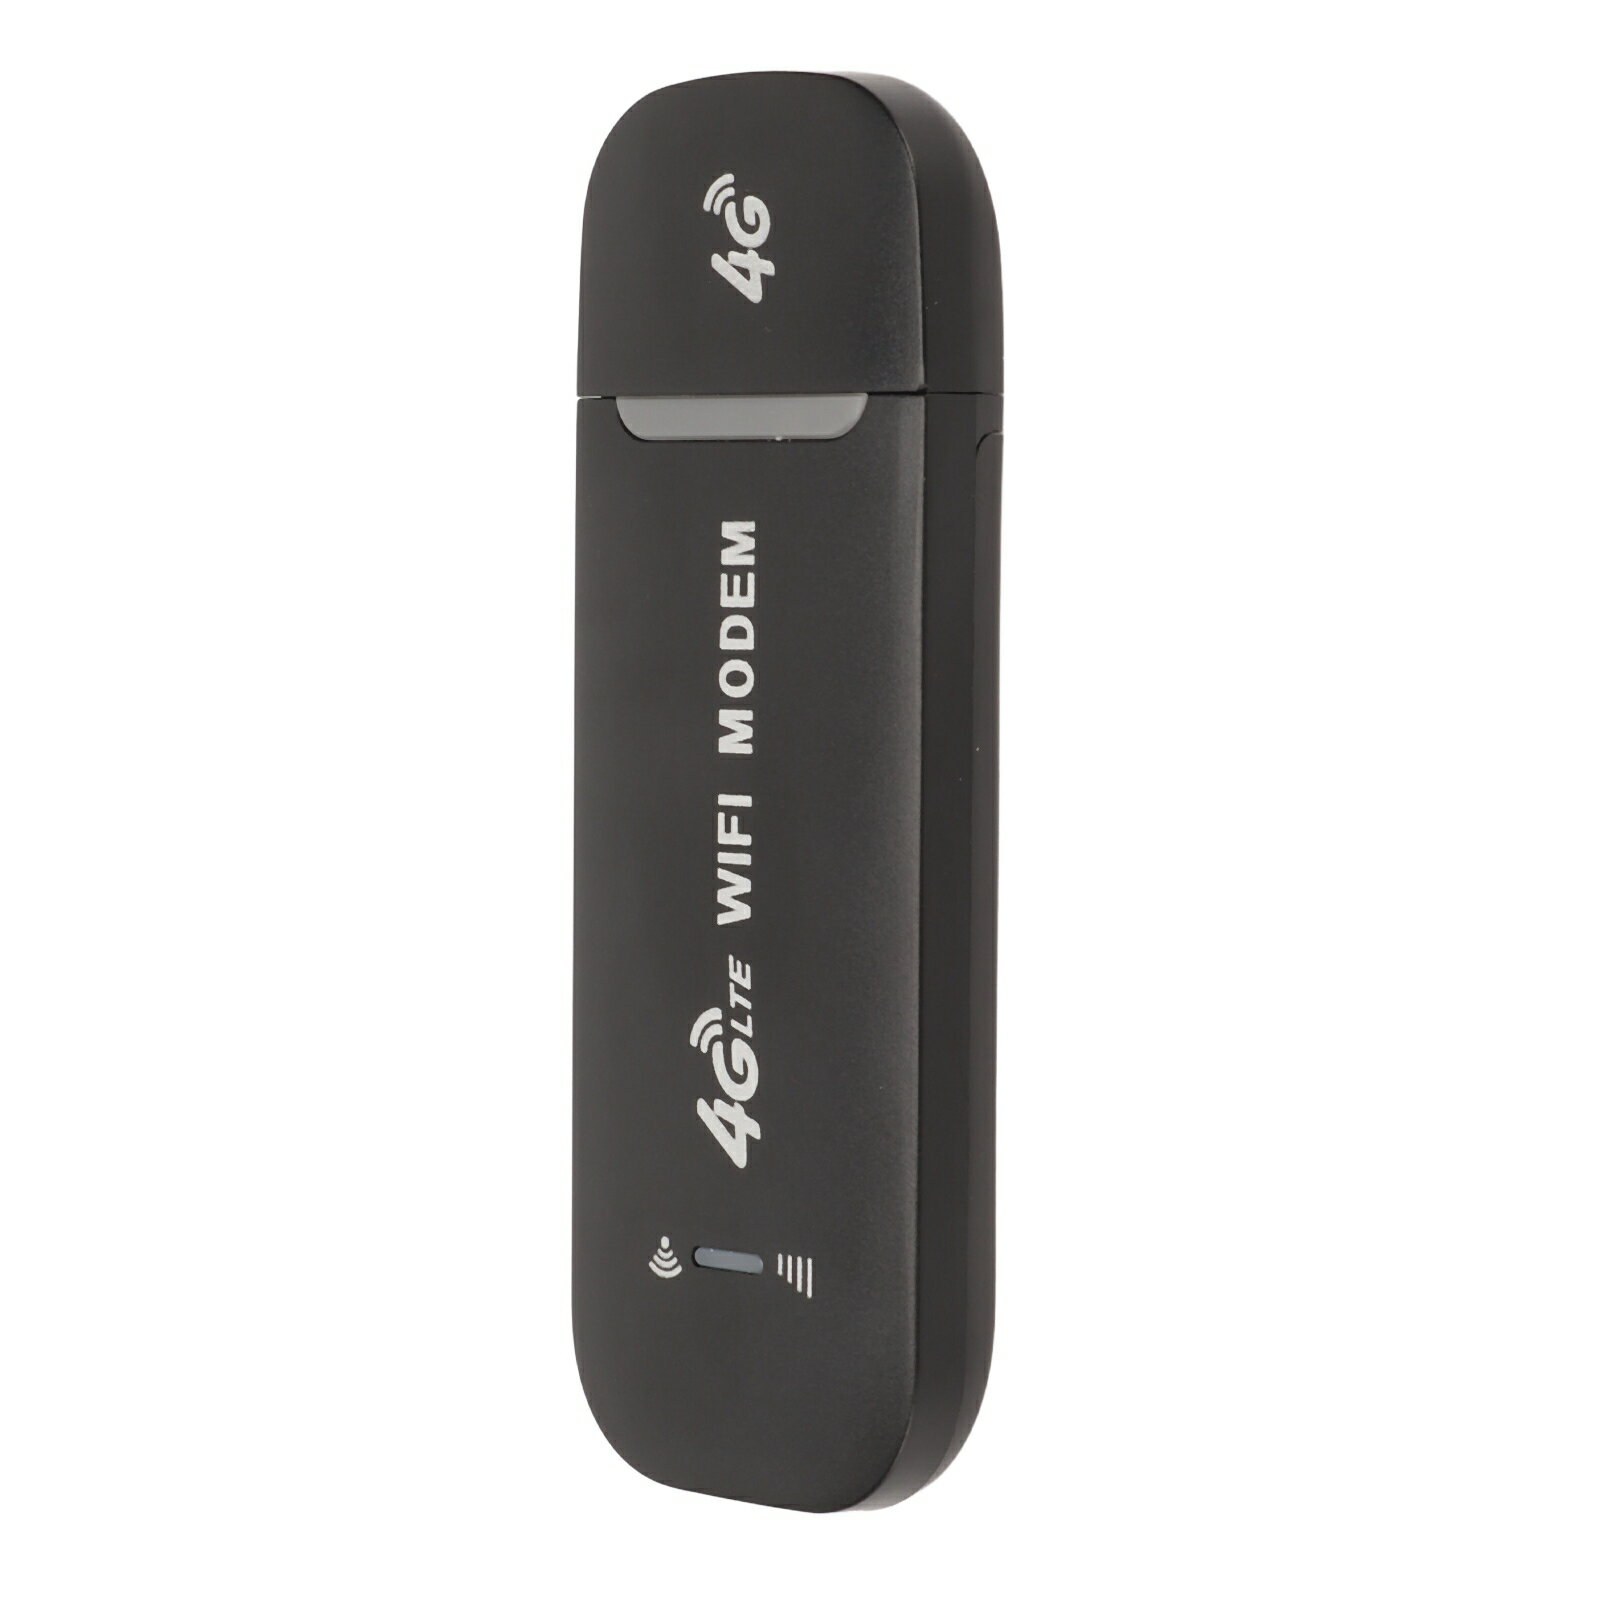 4G Lte ルーター 4G USB モデム Abs 4G Wifi ルーター ブラック 最大 10 ユーザー 安定した簡単接続 USB プラグアンドプレイ 4G Lte ルーター ホットスポット Sim カード電話 PC 用